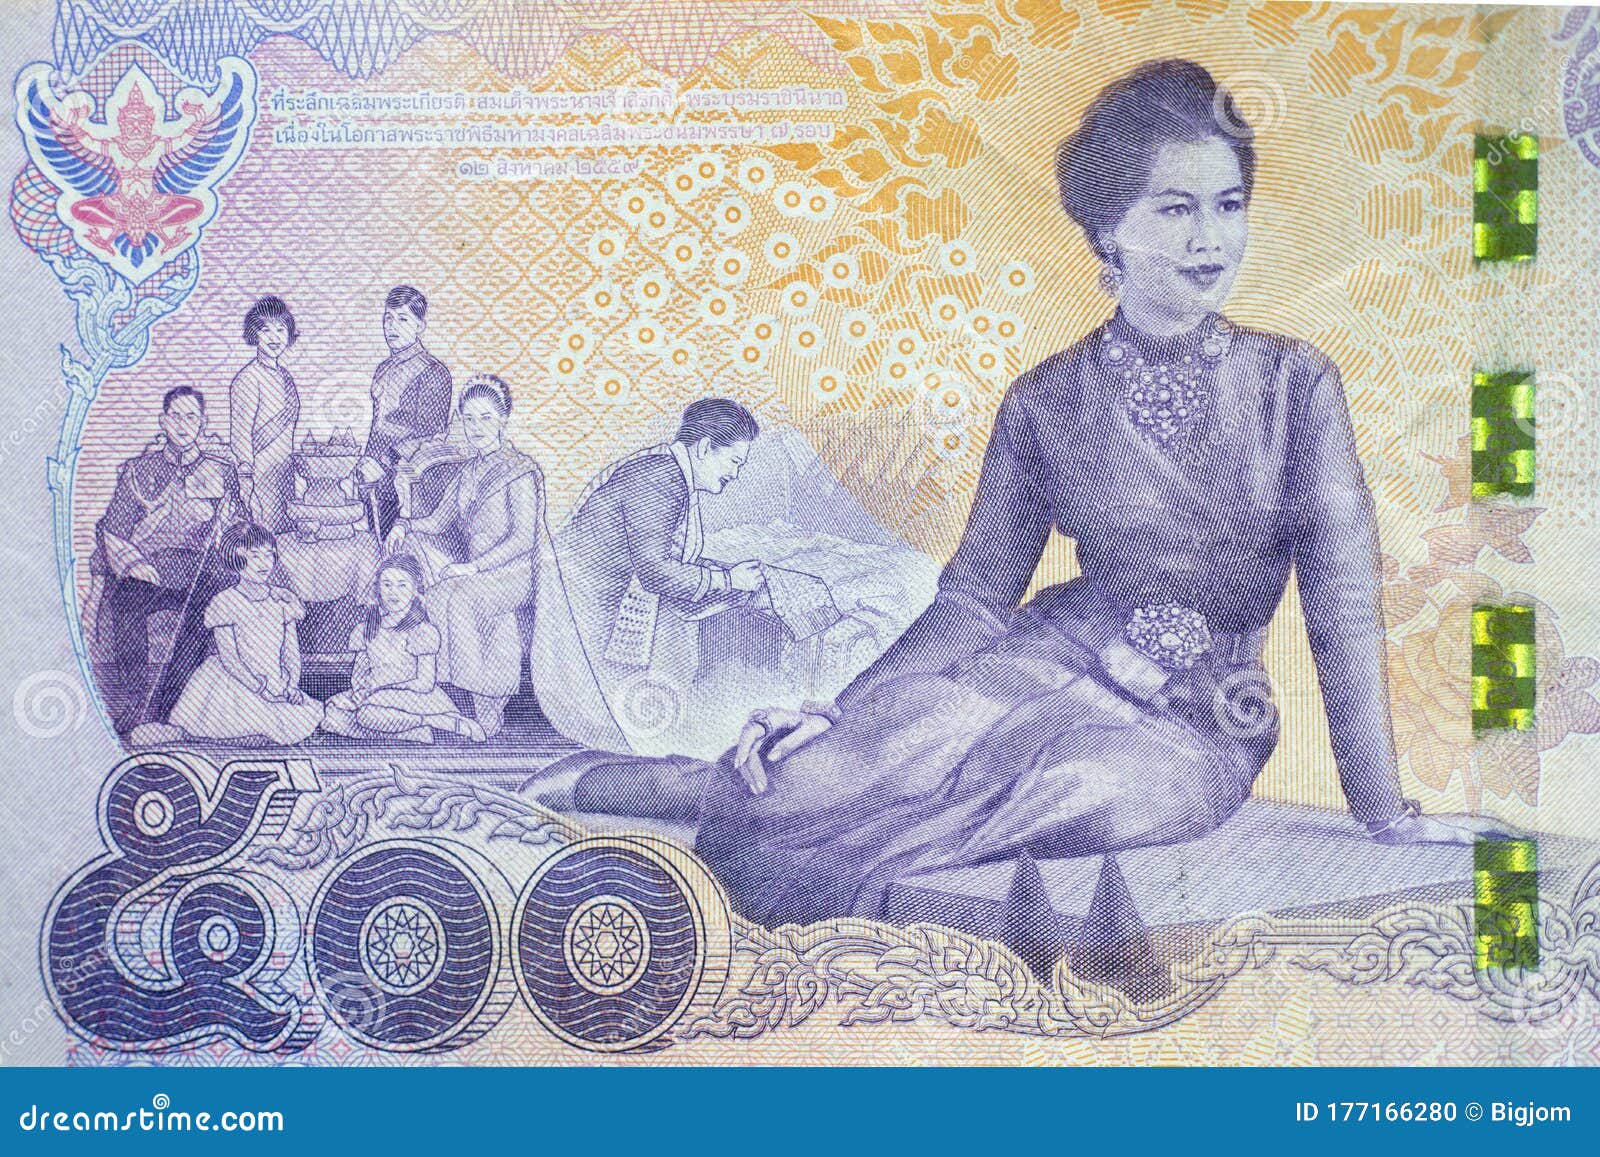 泰铢2000的纸币图片-图库-五毛网